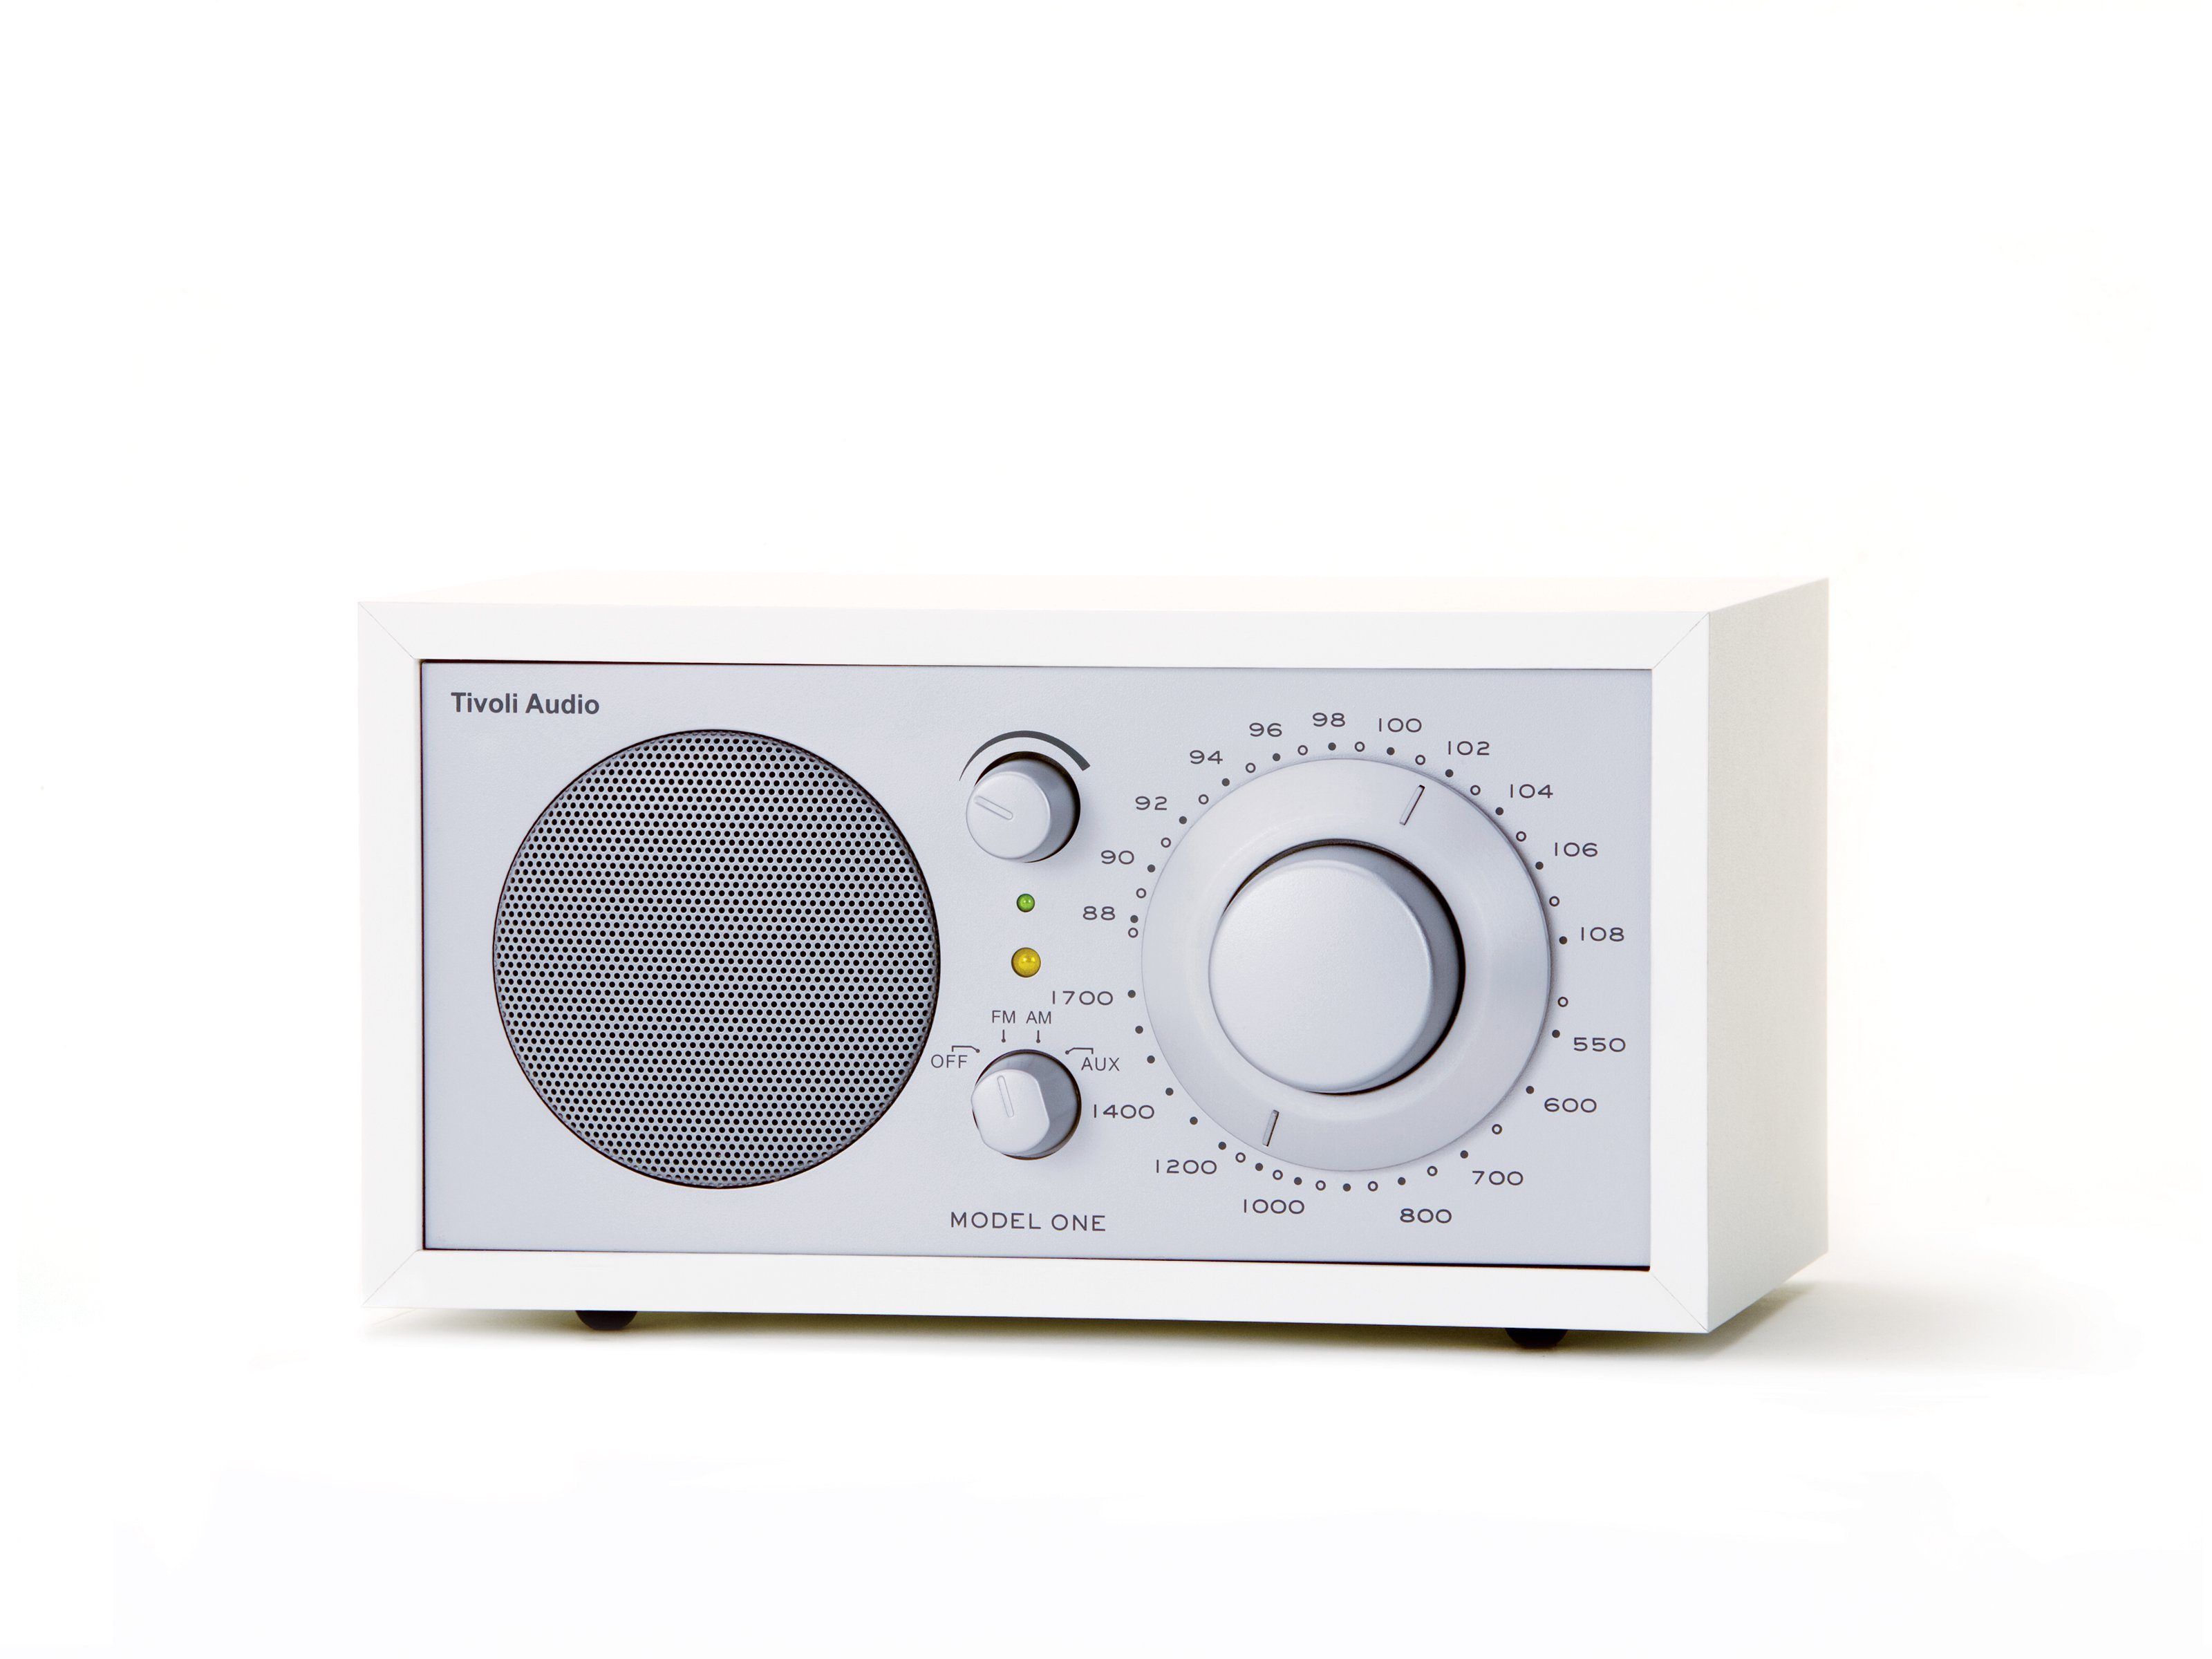 One Küchen-Radio, Tivoli Küchen-Radio Weiss/Silber (FM-Tuner, Retro-Optik, Audio Echtholz-Gehäuse) Model